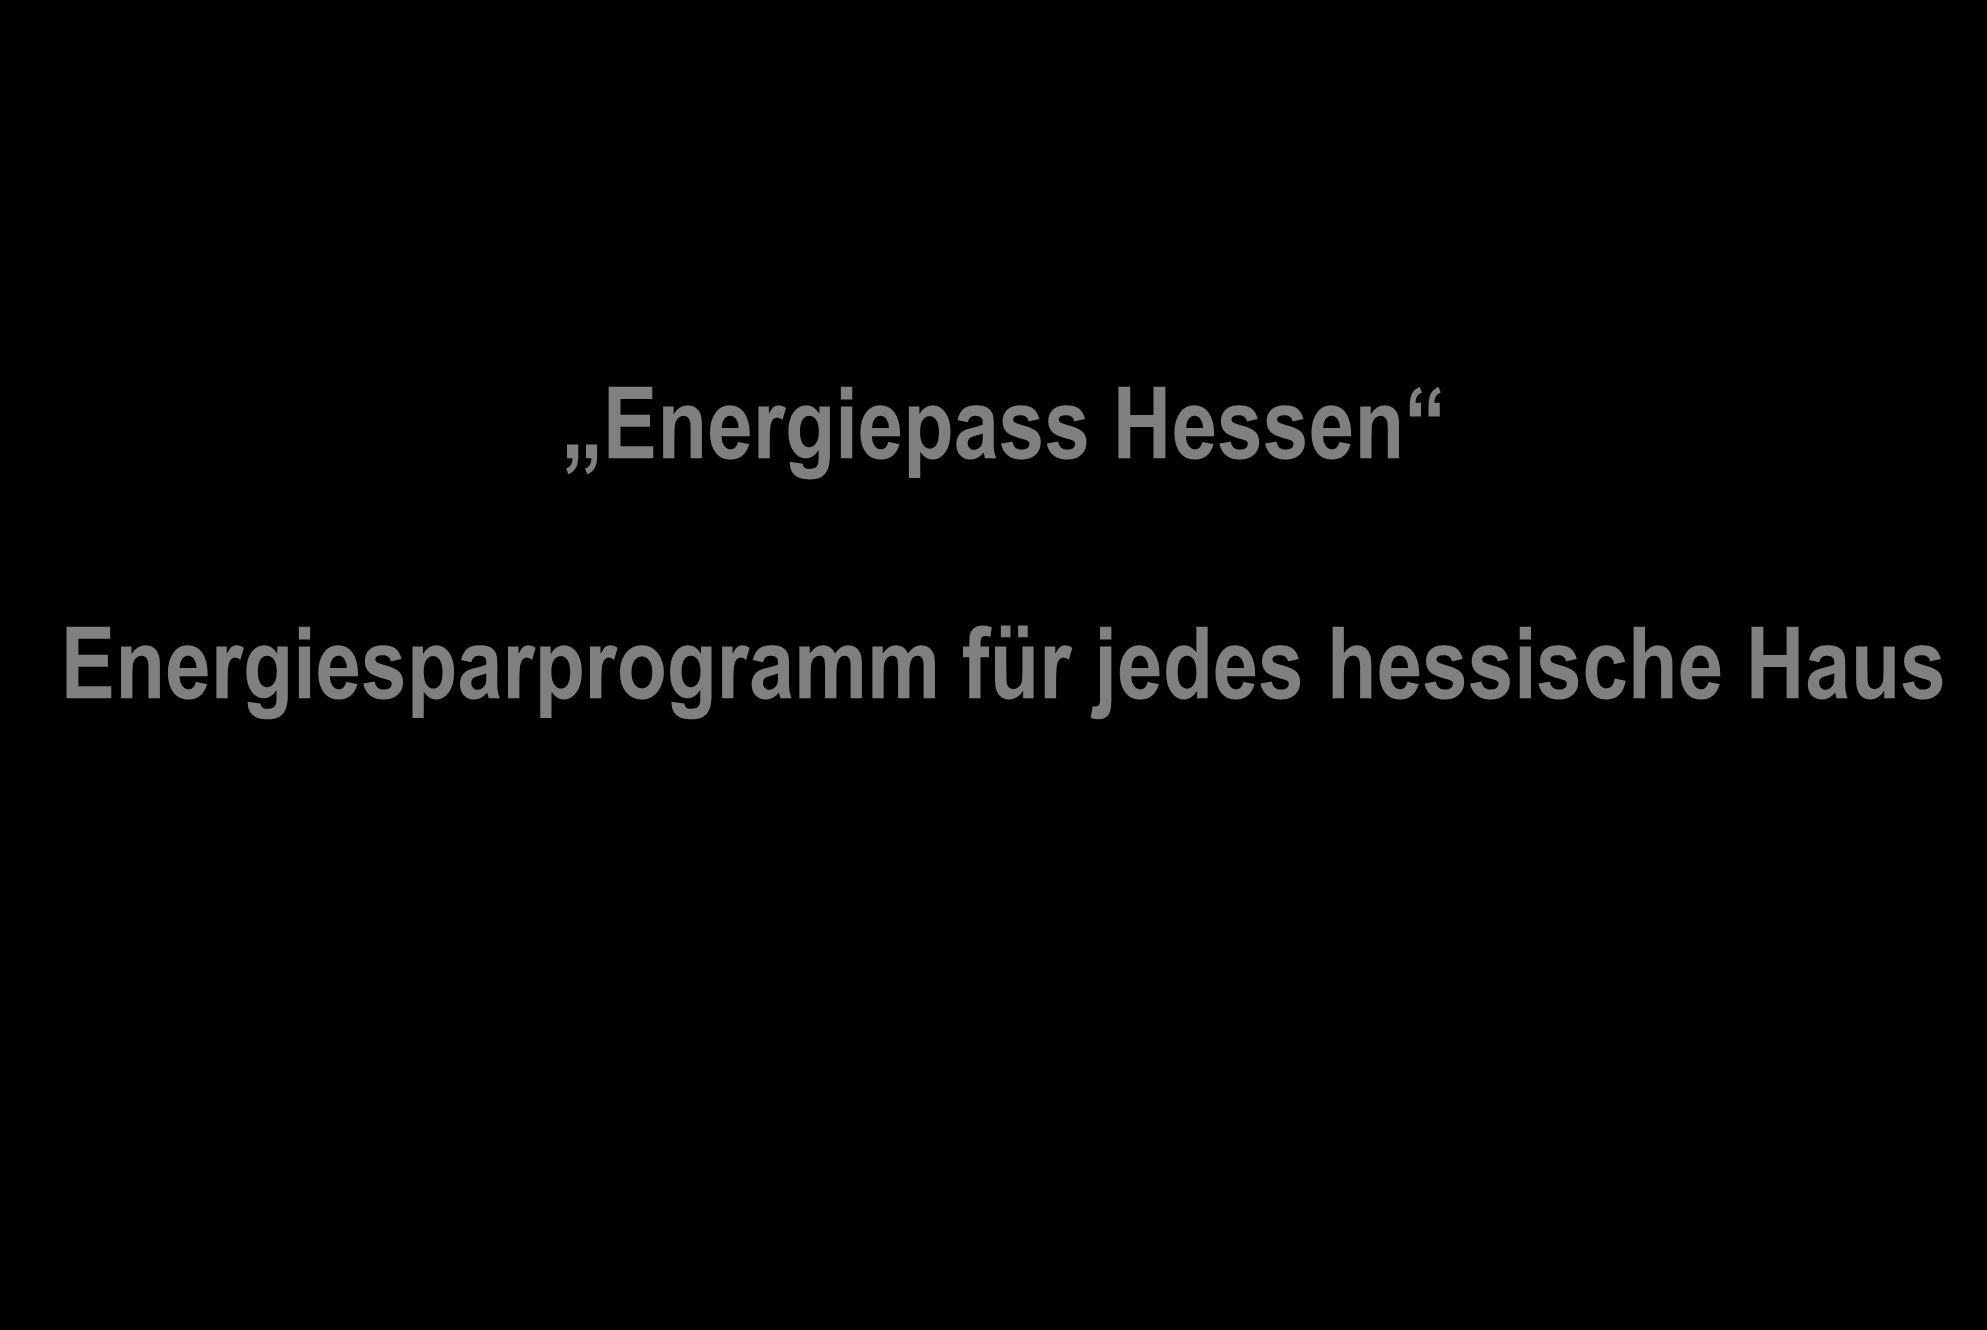 Energiepass Hessen